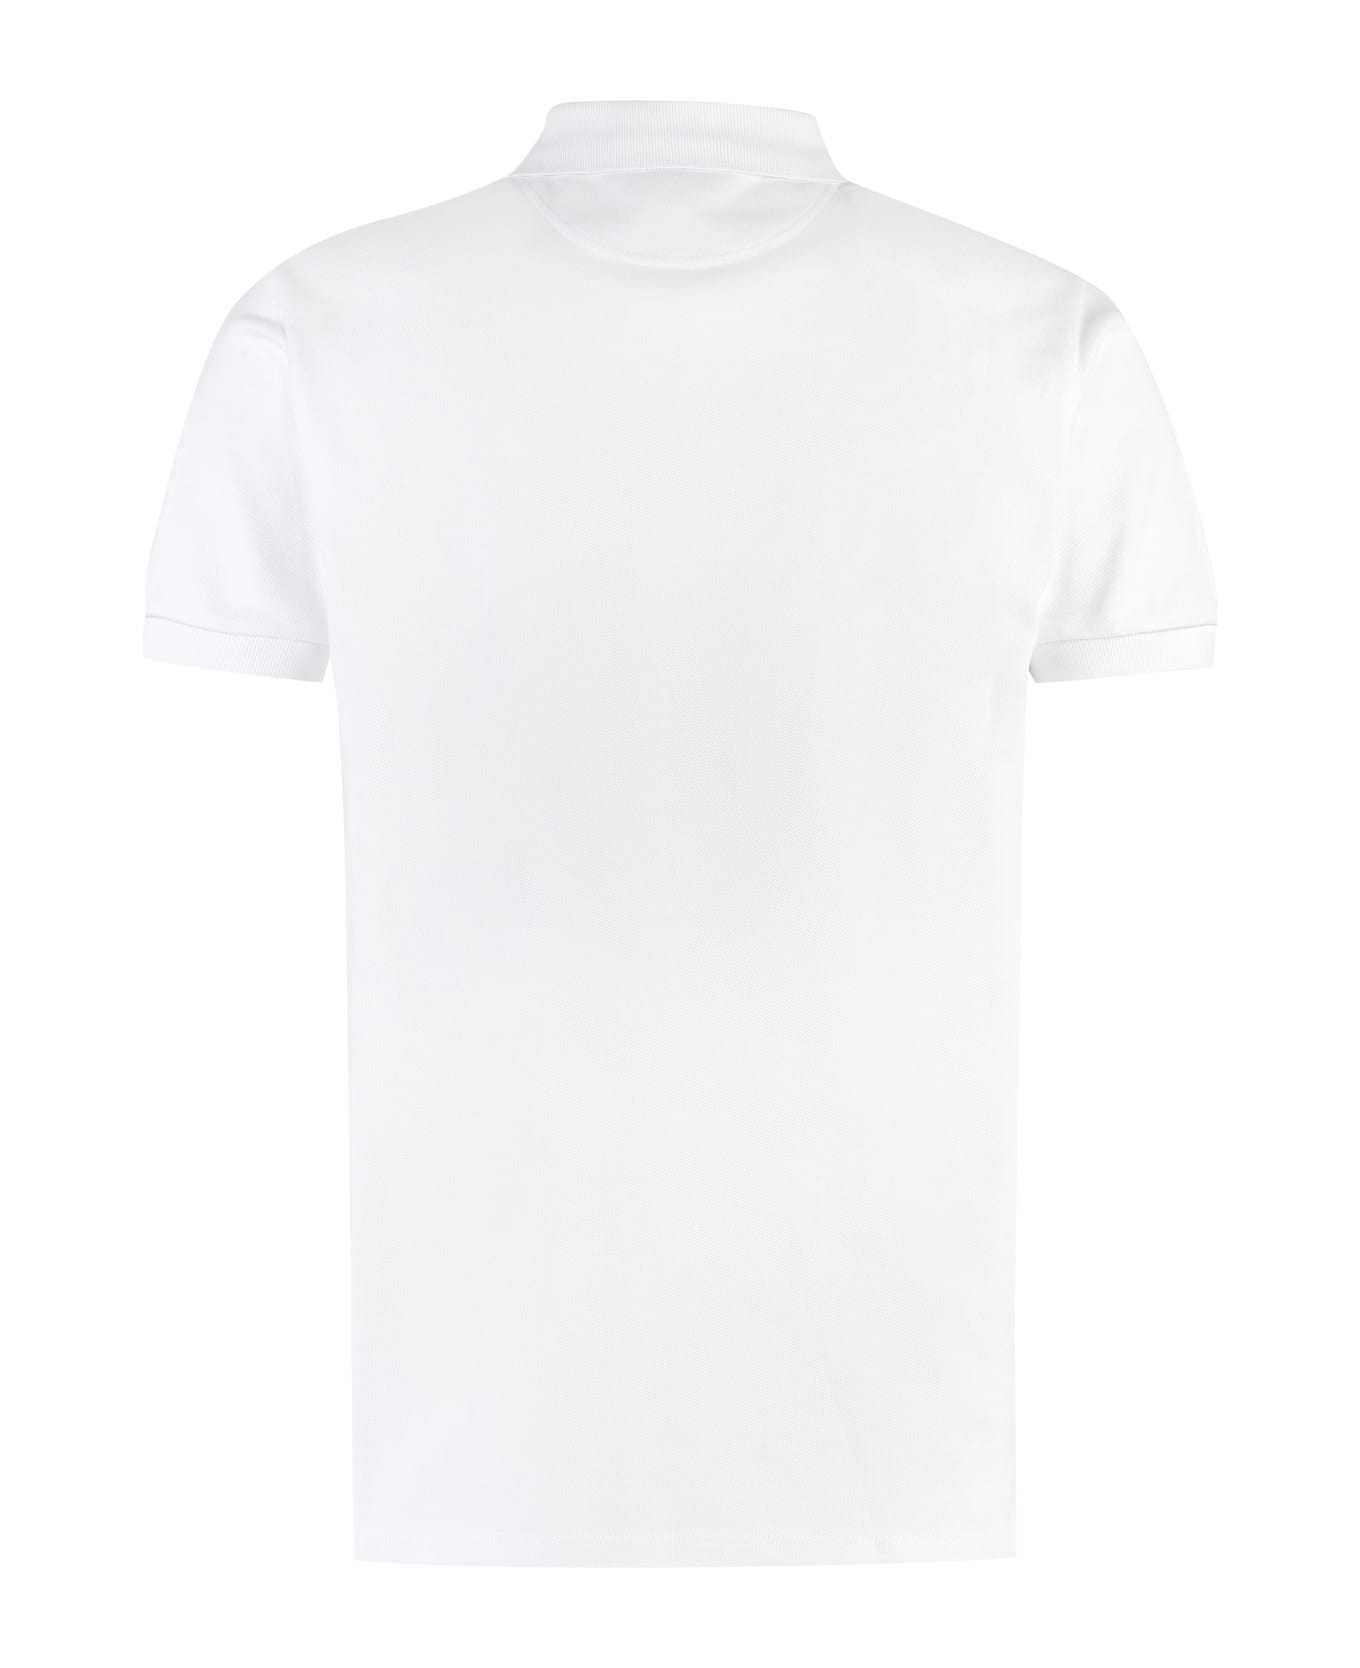 Bally Cotton Piqué Polo Shirt - White